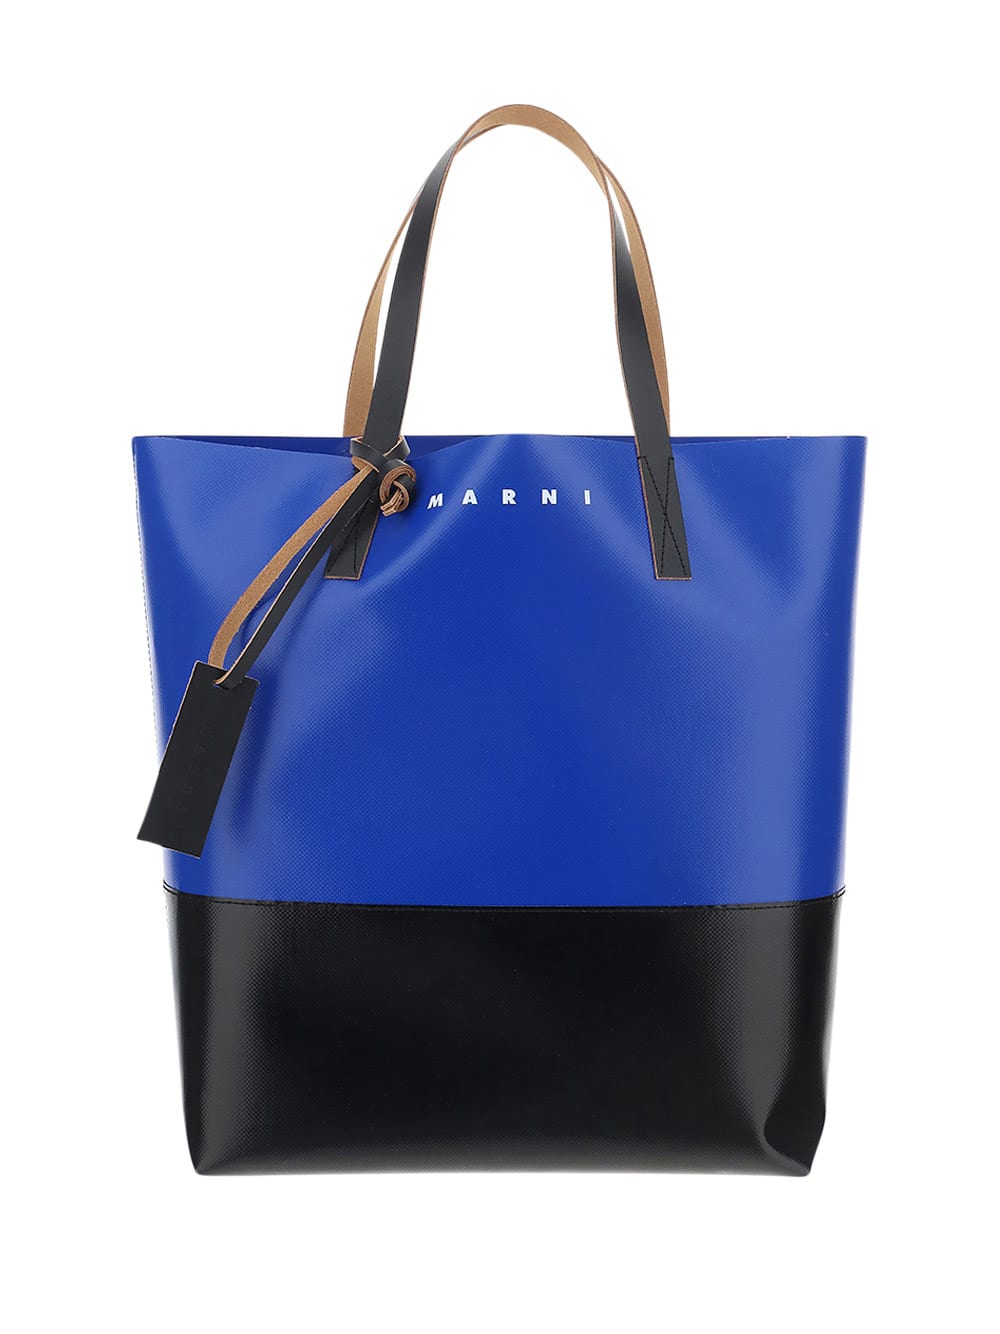 Marni Shopping Bag In Blu/nero